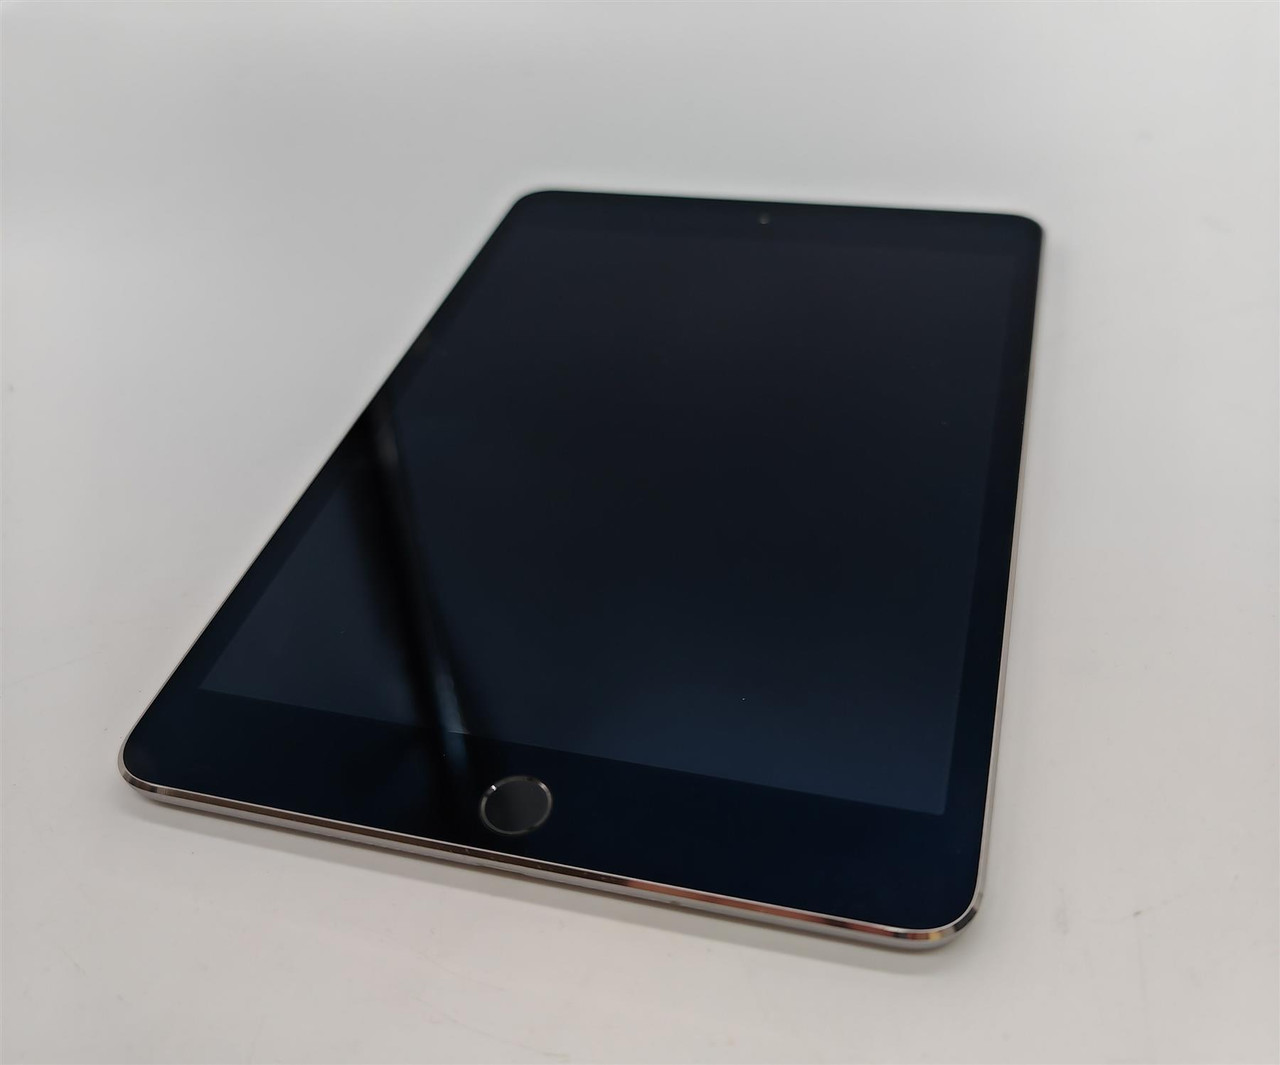 Apple iPad Mini 4th Generation 128GB Wifi 7.9